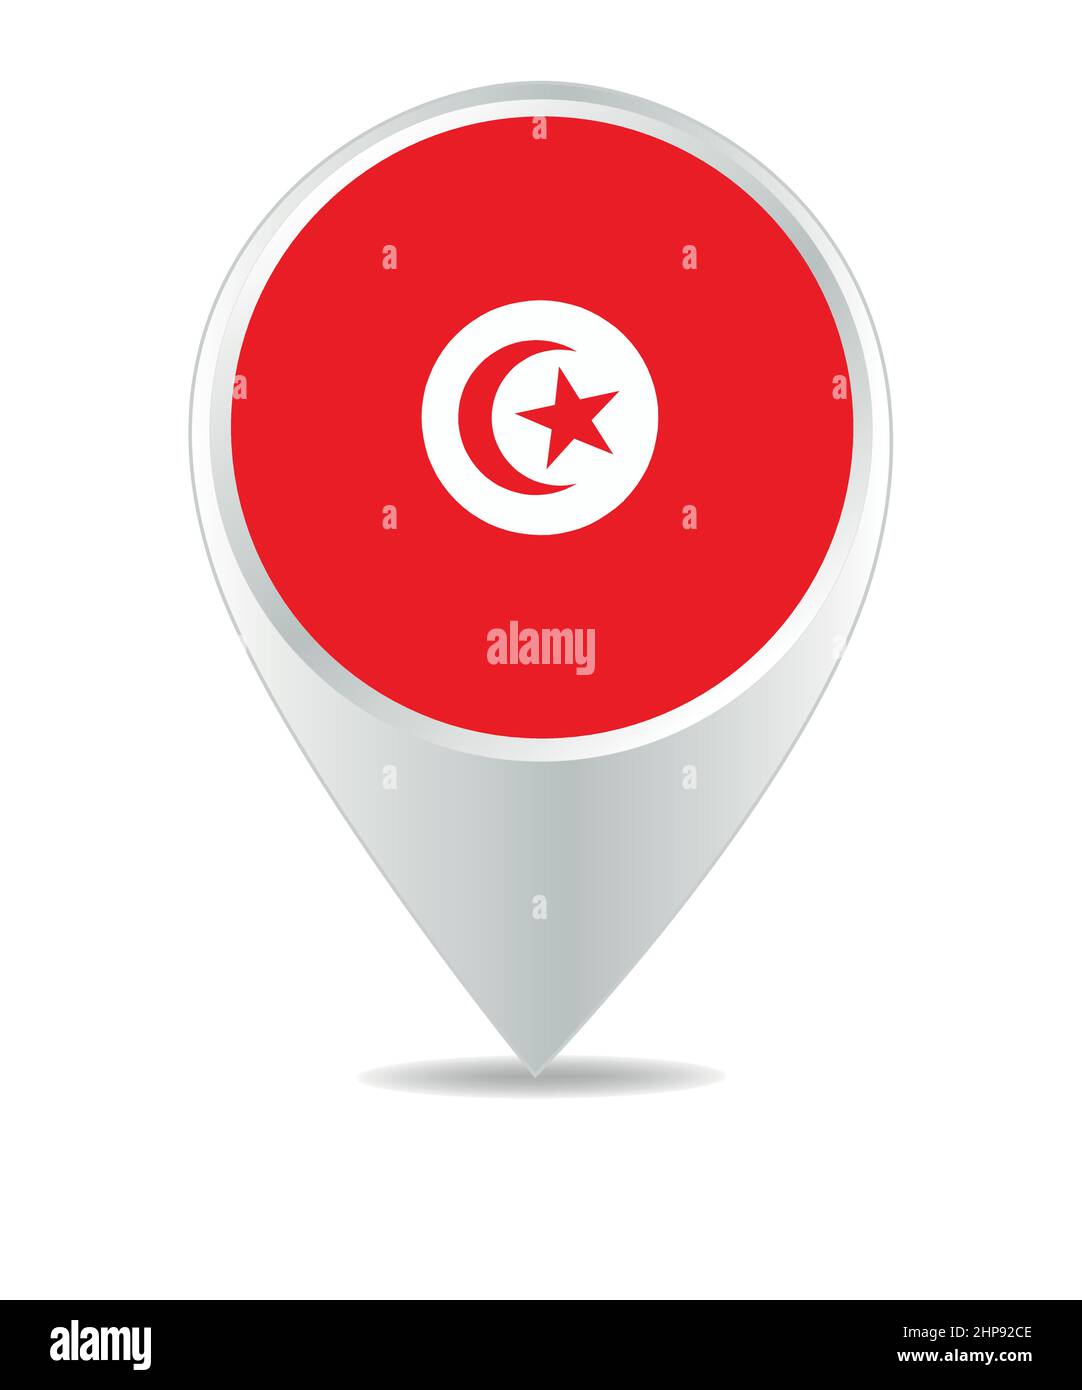 Location Icon for Tunisia Stock Vector